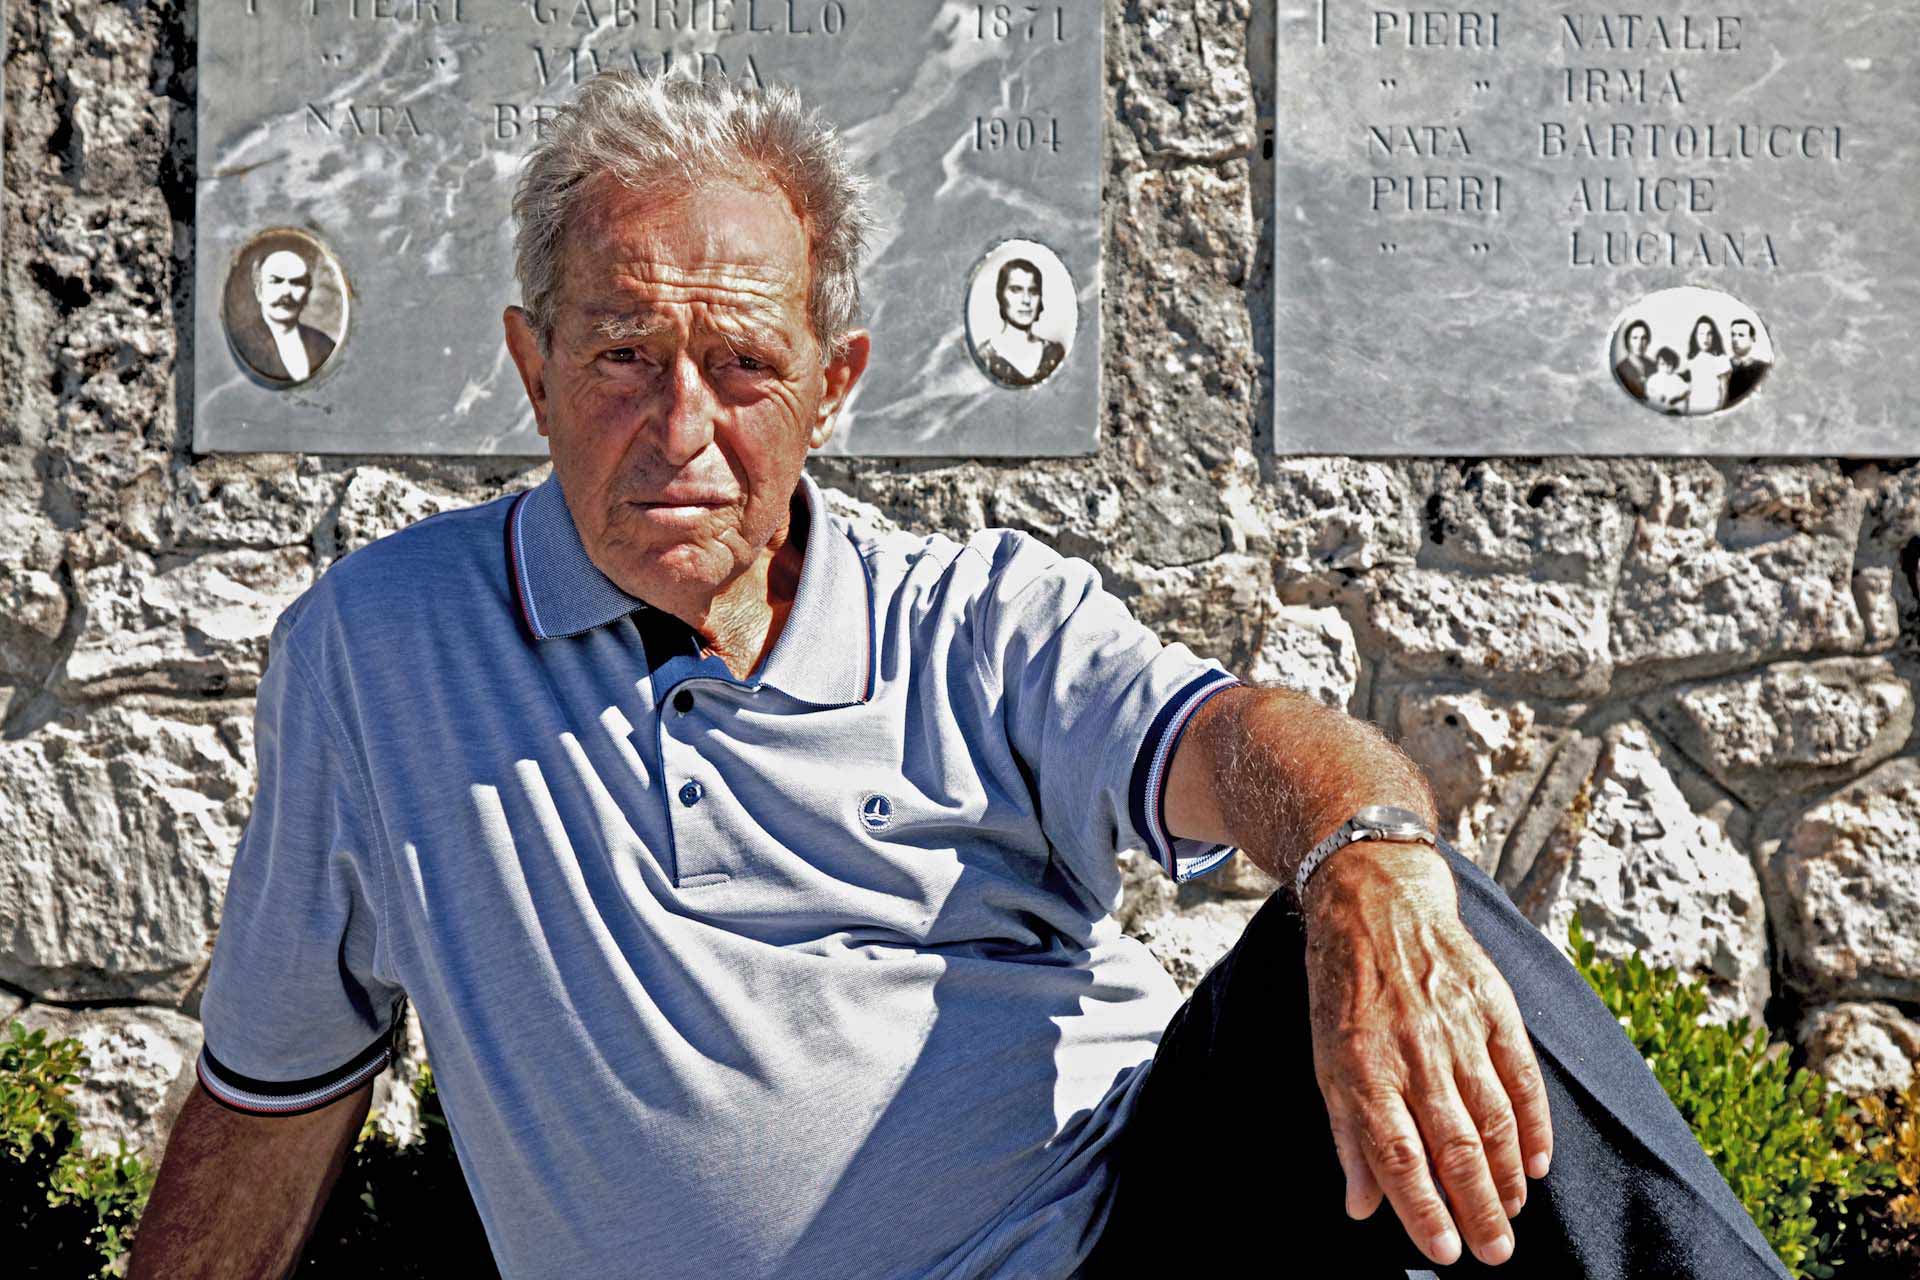 Enrico Pieri vor den Gedenksteinen seiner Familie in Sant'Anna. "Er ist einer der wenigen, die den 12. August 1944 überlebt haben. Etwa 220 Soldaten der SS und der Wehrmacht ermordeten an jenem Tag mehr als 500 Menschen und verbrannten die Leichen, Tiere, Häuser, Ställe."